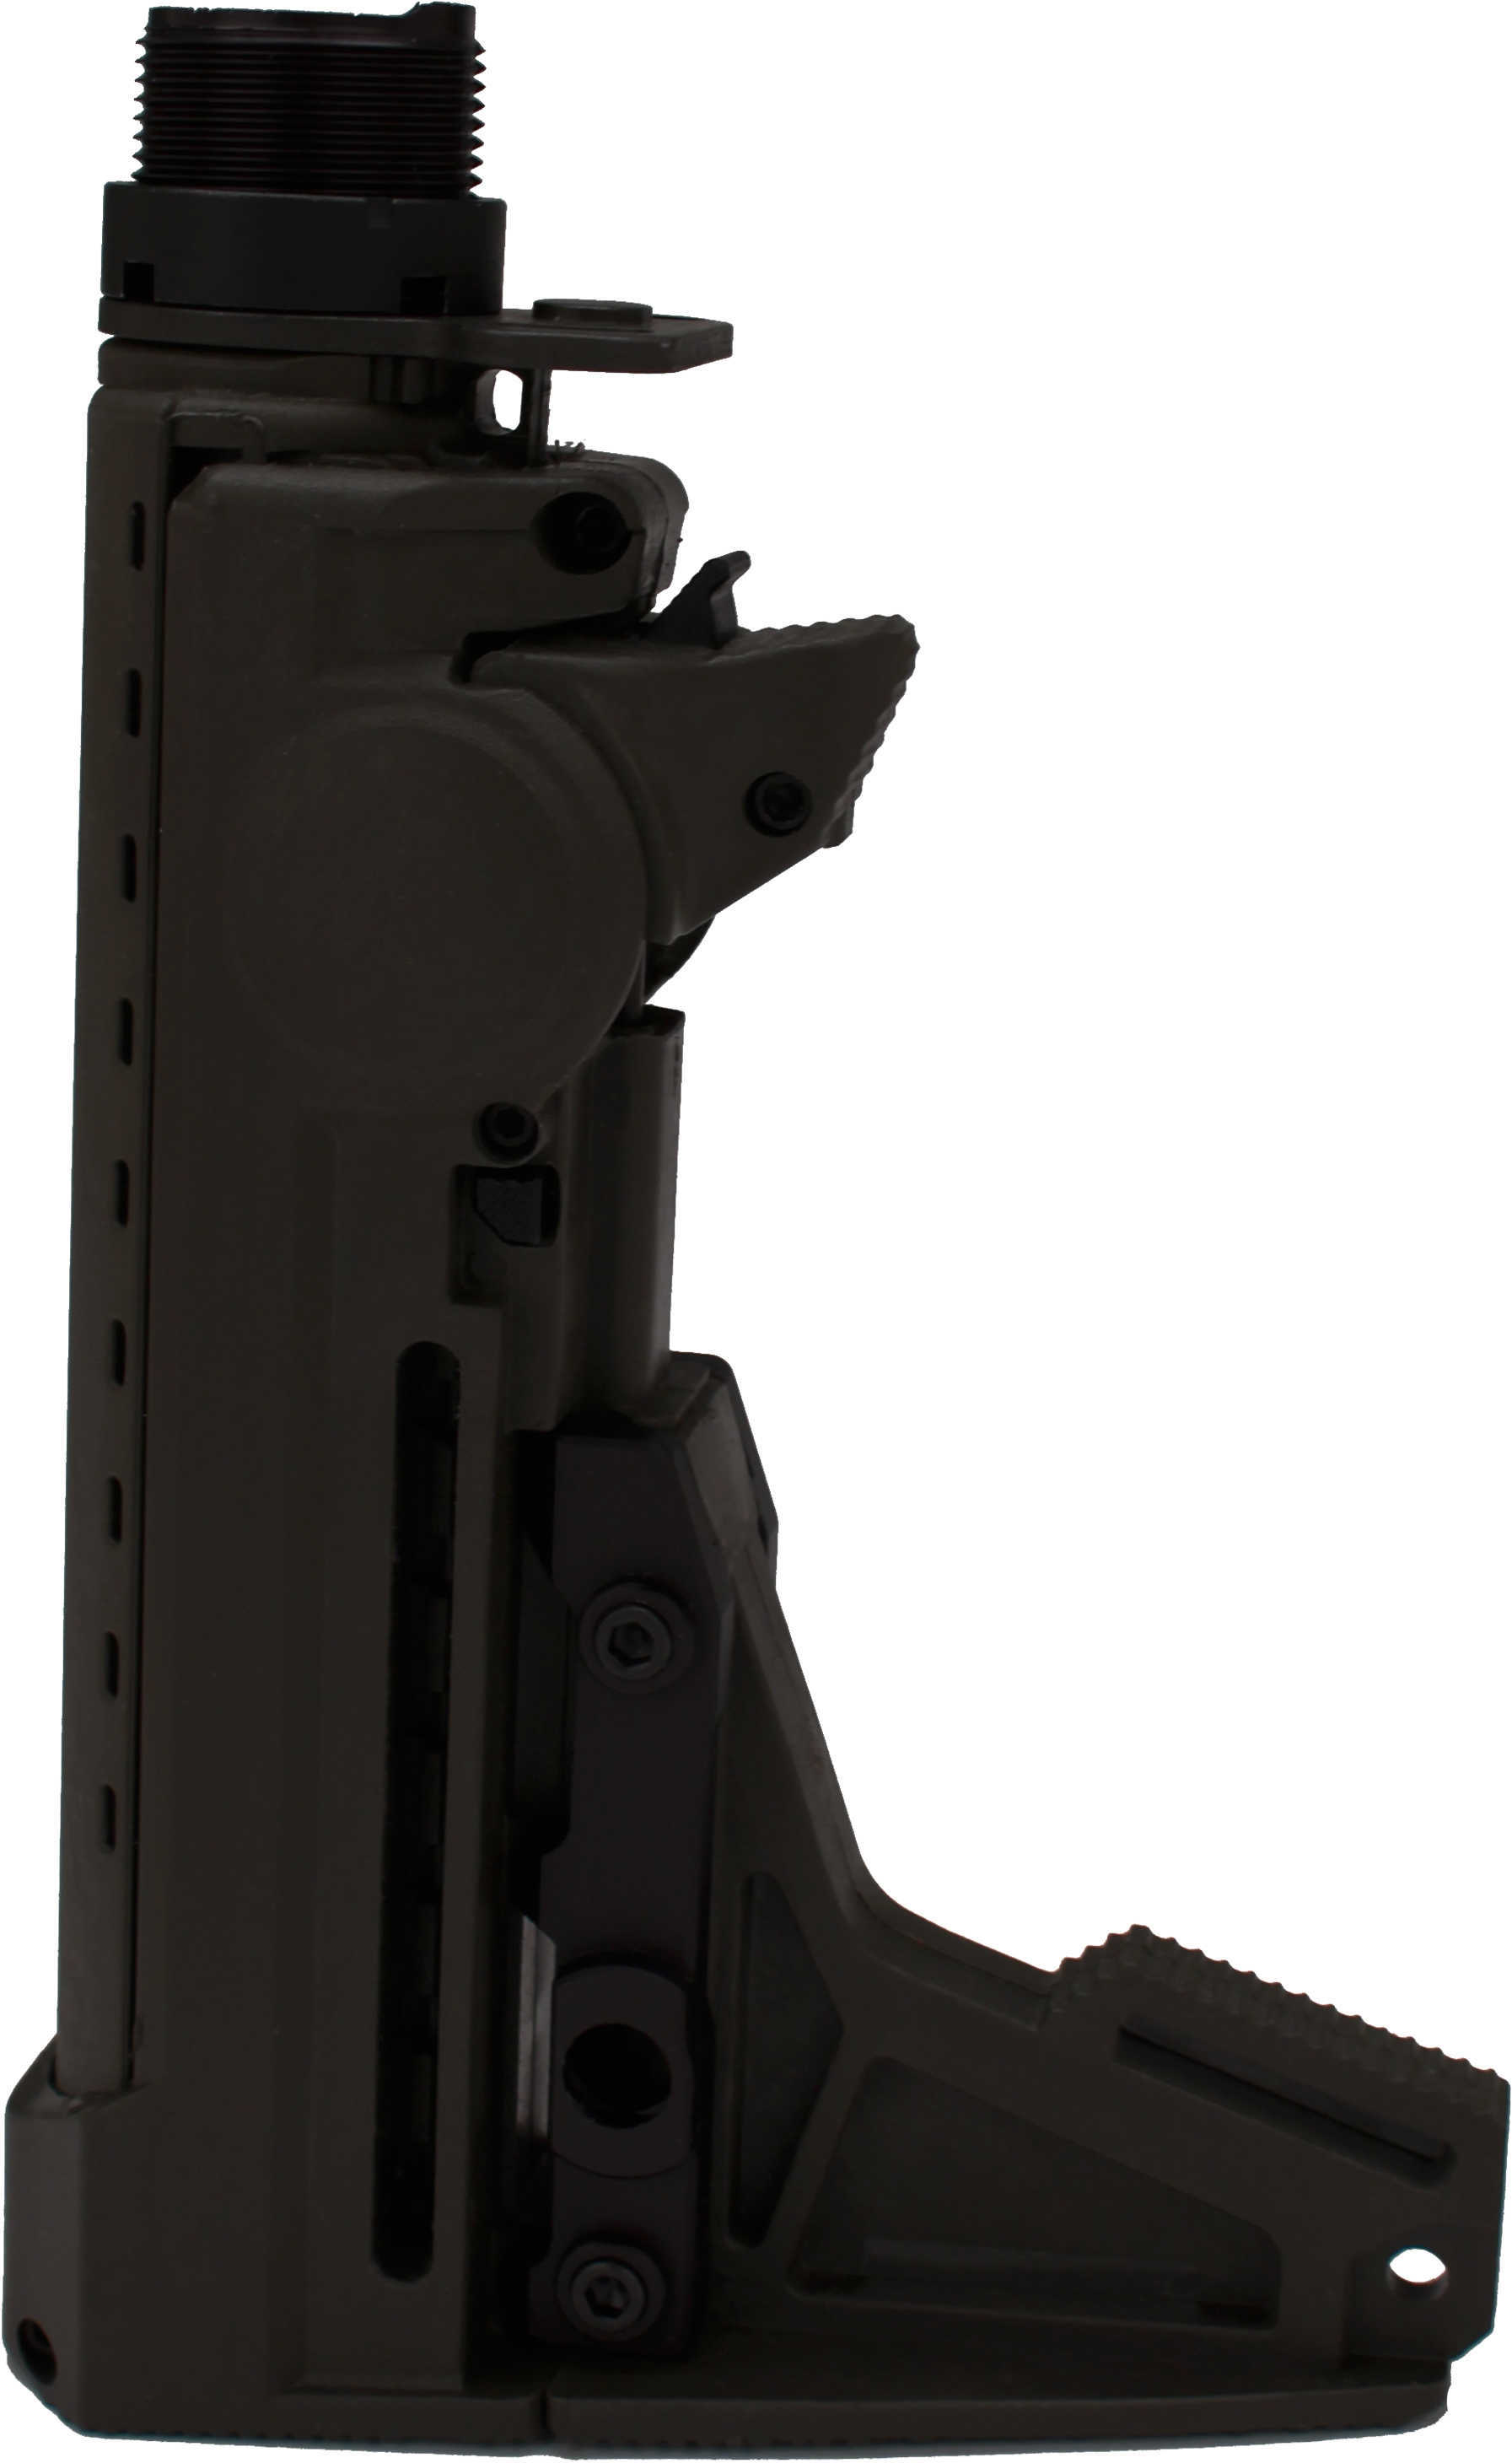 Ergo Grip Stock F93 Pro Kit For AR-15 Black